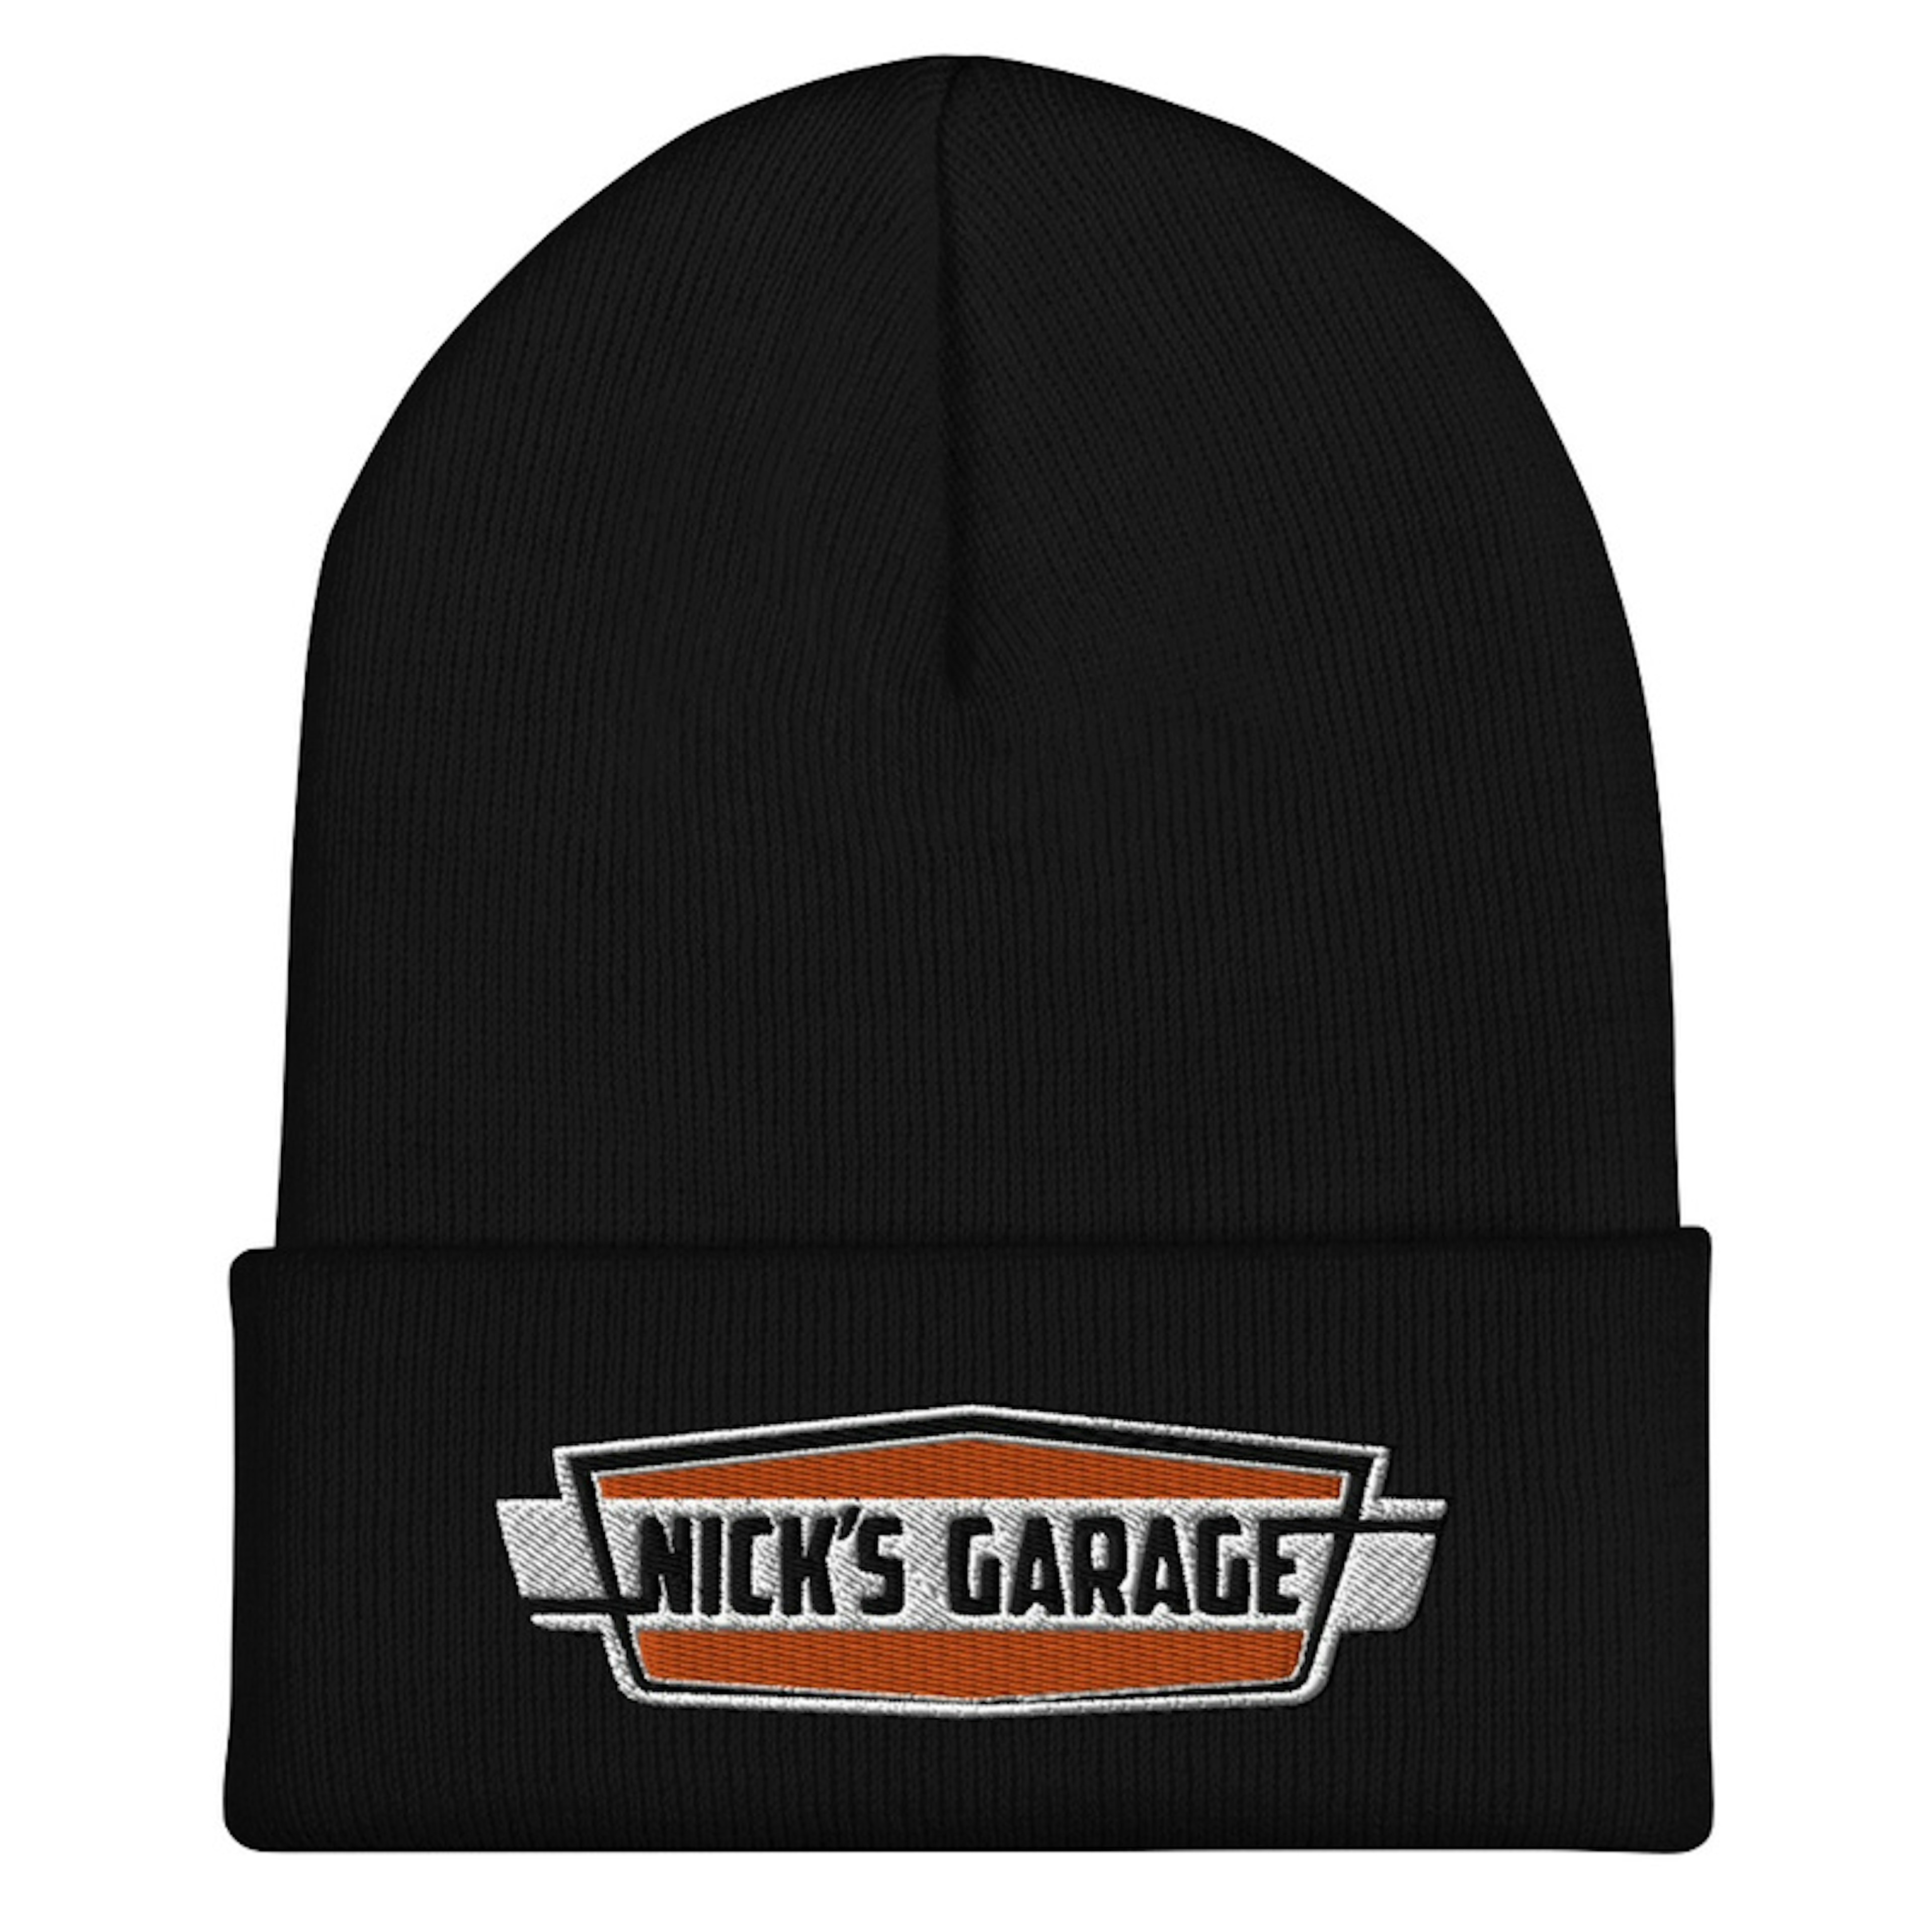 Nick's Garage Embroidered Beanie